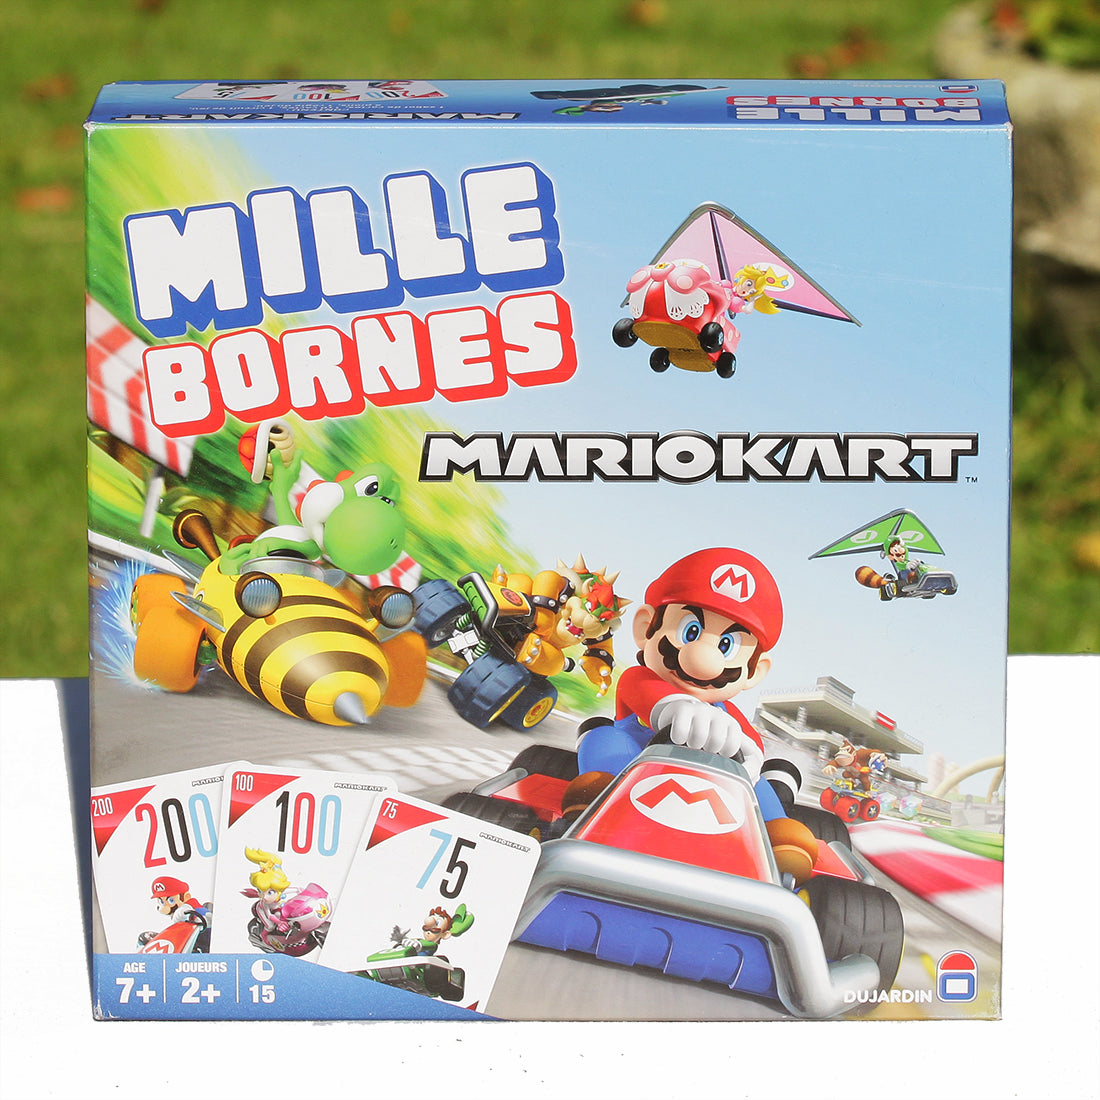 Milles Bornes Mario Kart